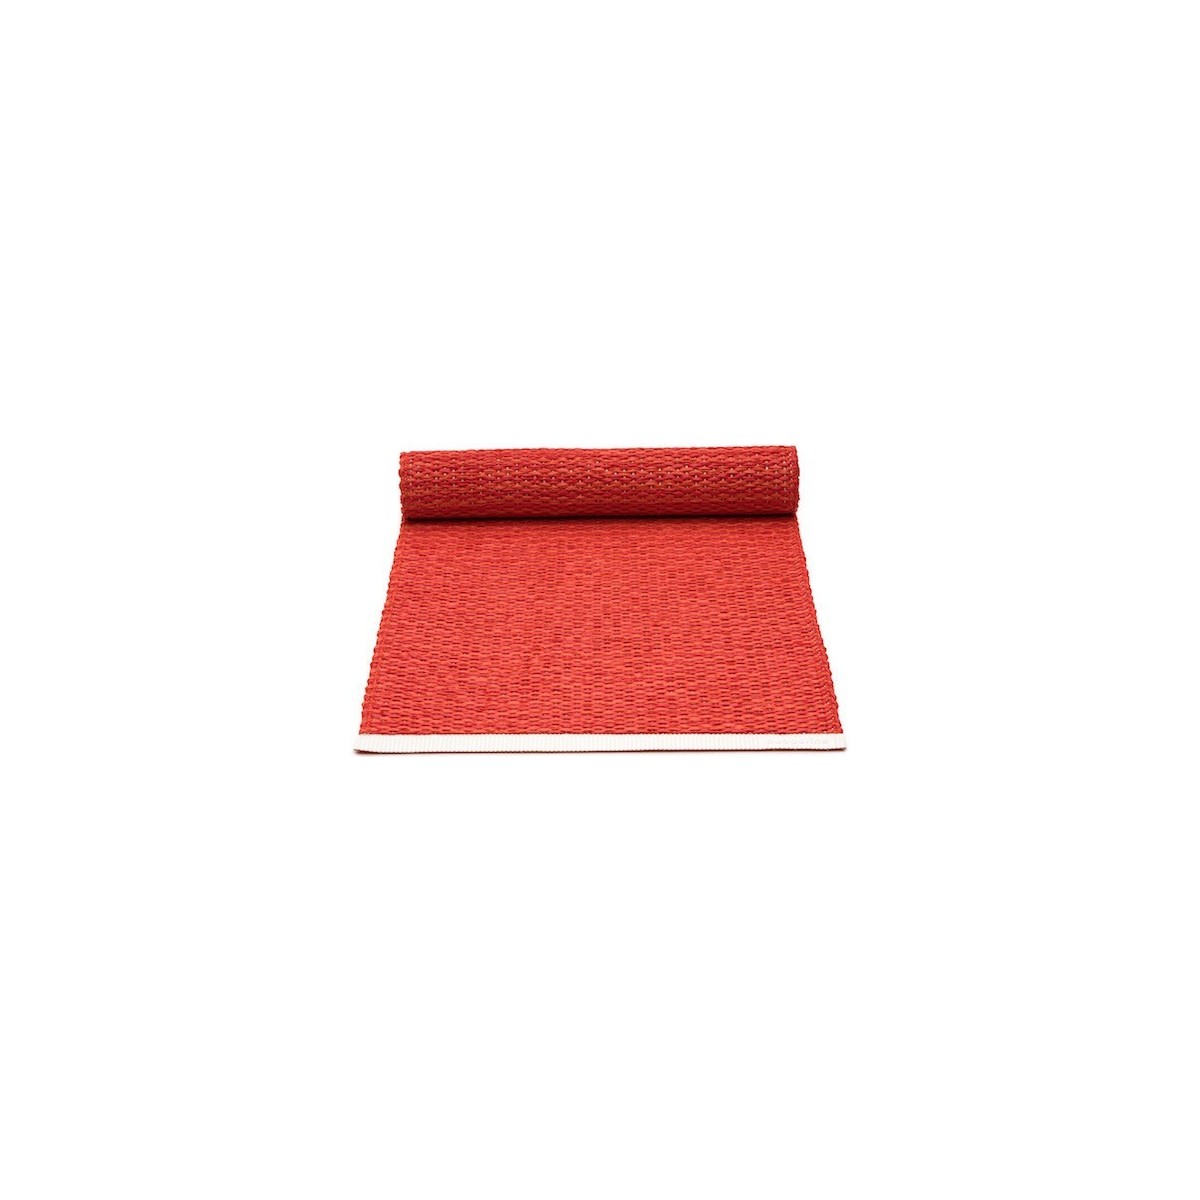 36x100cm - rouge / rouge corail - chemin de table Mono